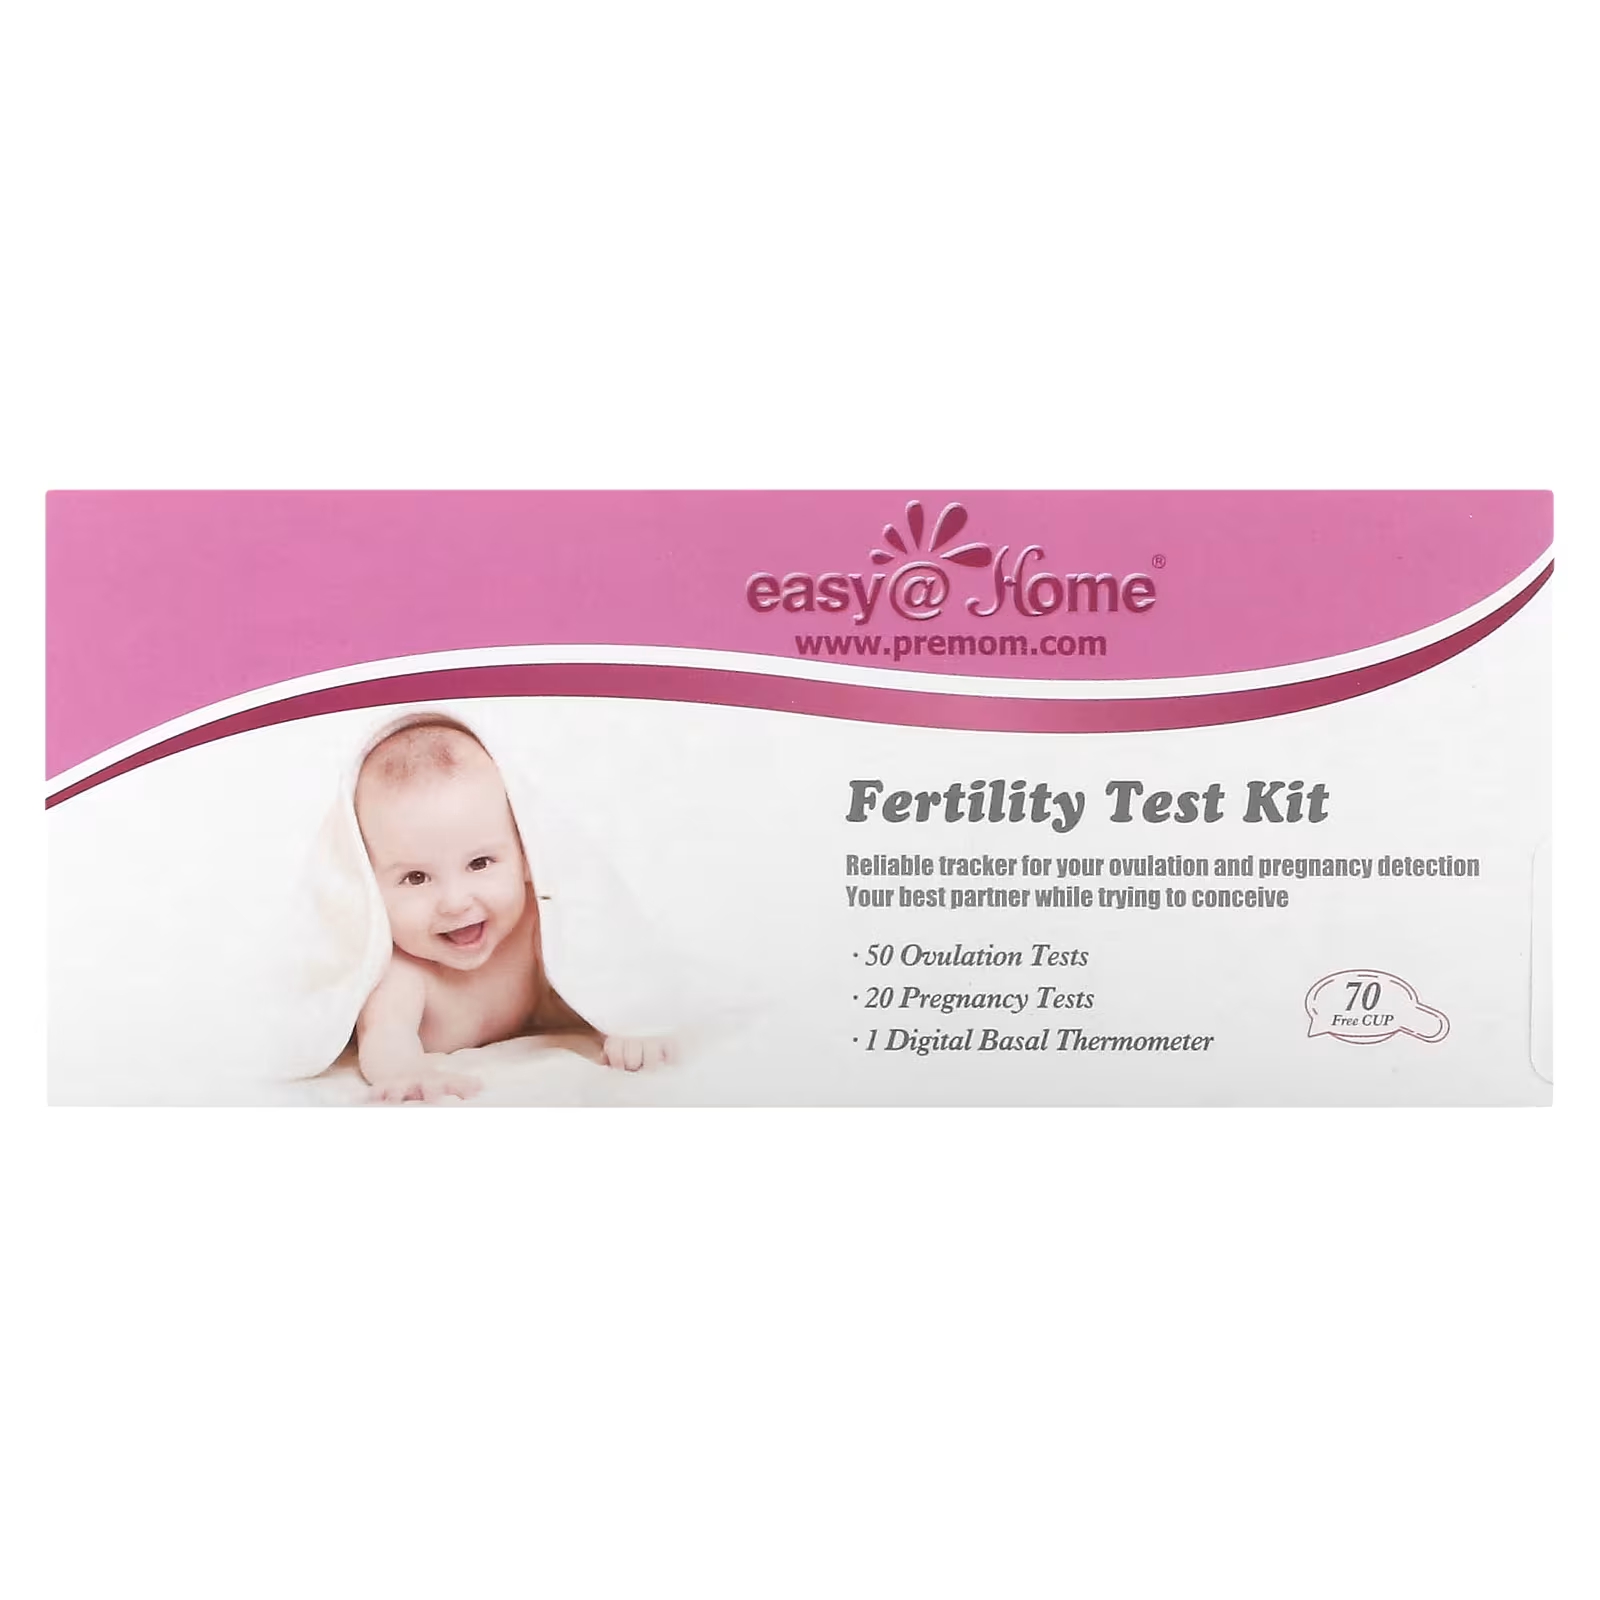 Набор для тестов на фертильность Easy@Home 50 тестов на овуляцию и 20 тестов на беременность + базальный термометр